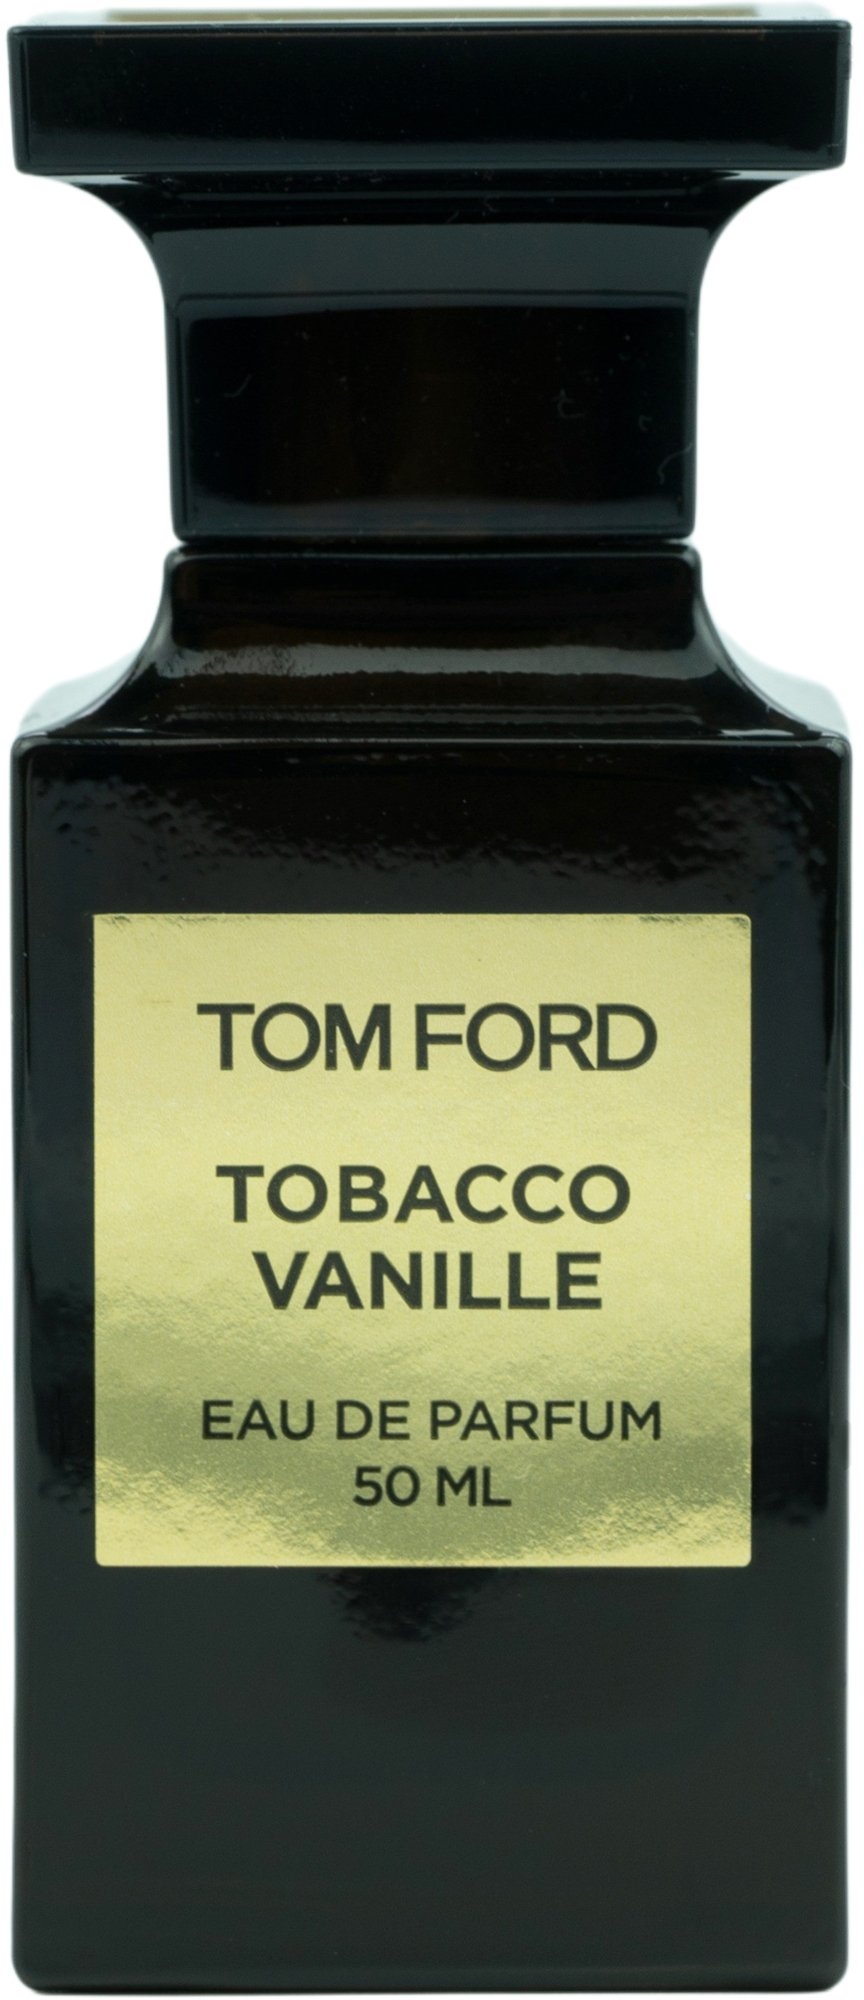 Bild von Tobacco Vanille Eau de Parfum 50 ml